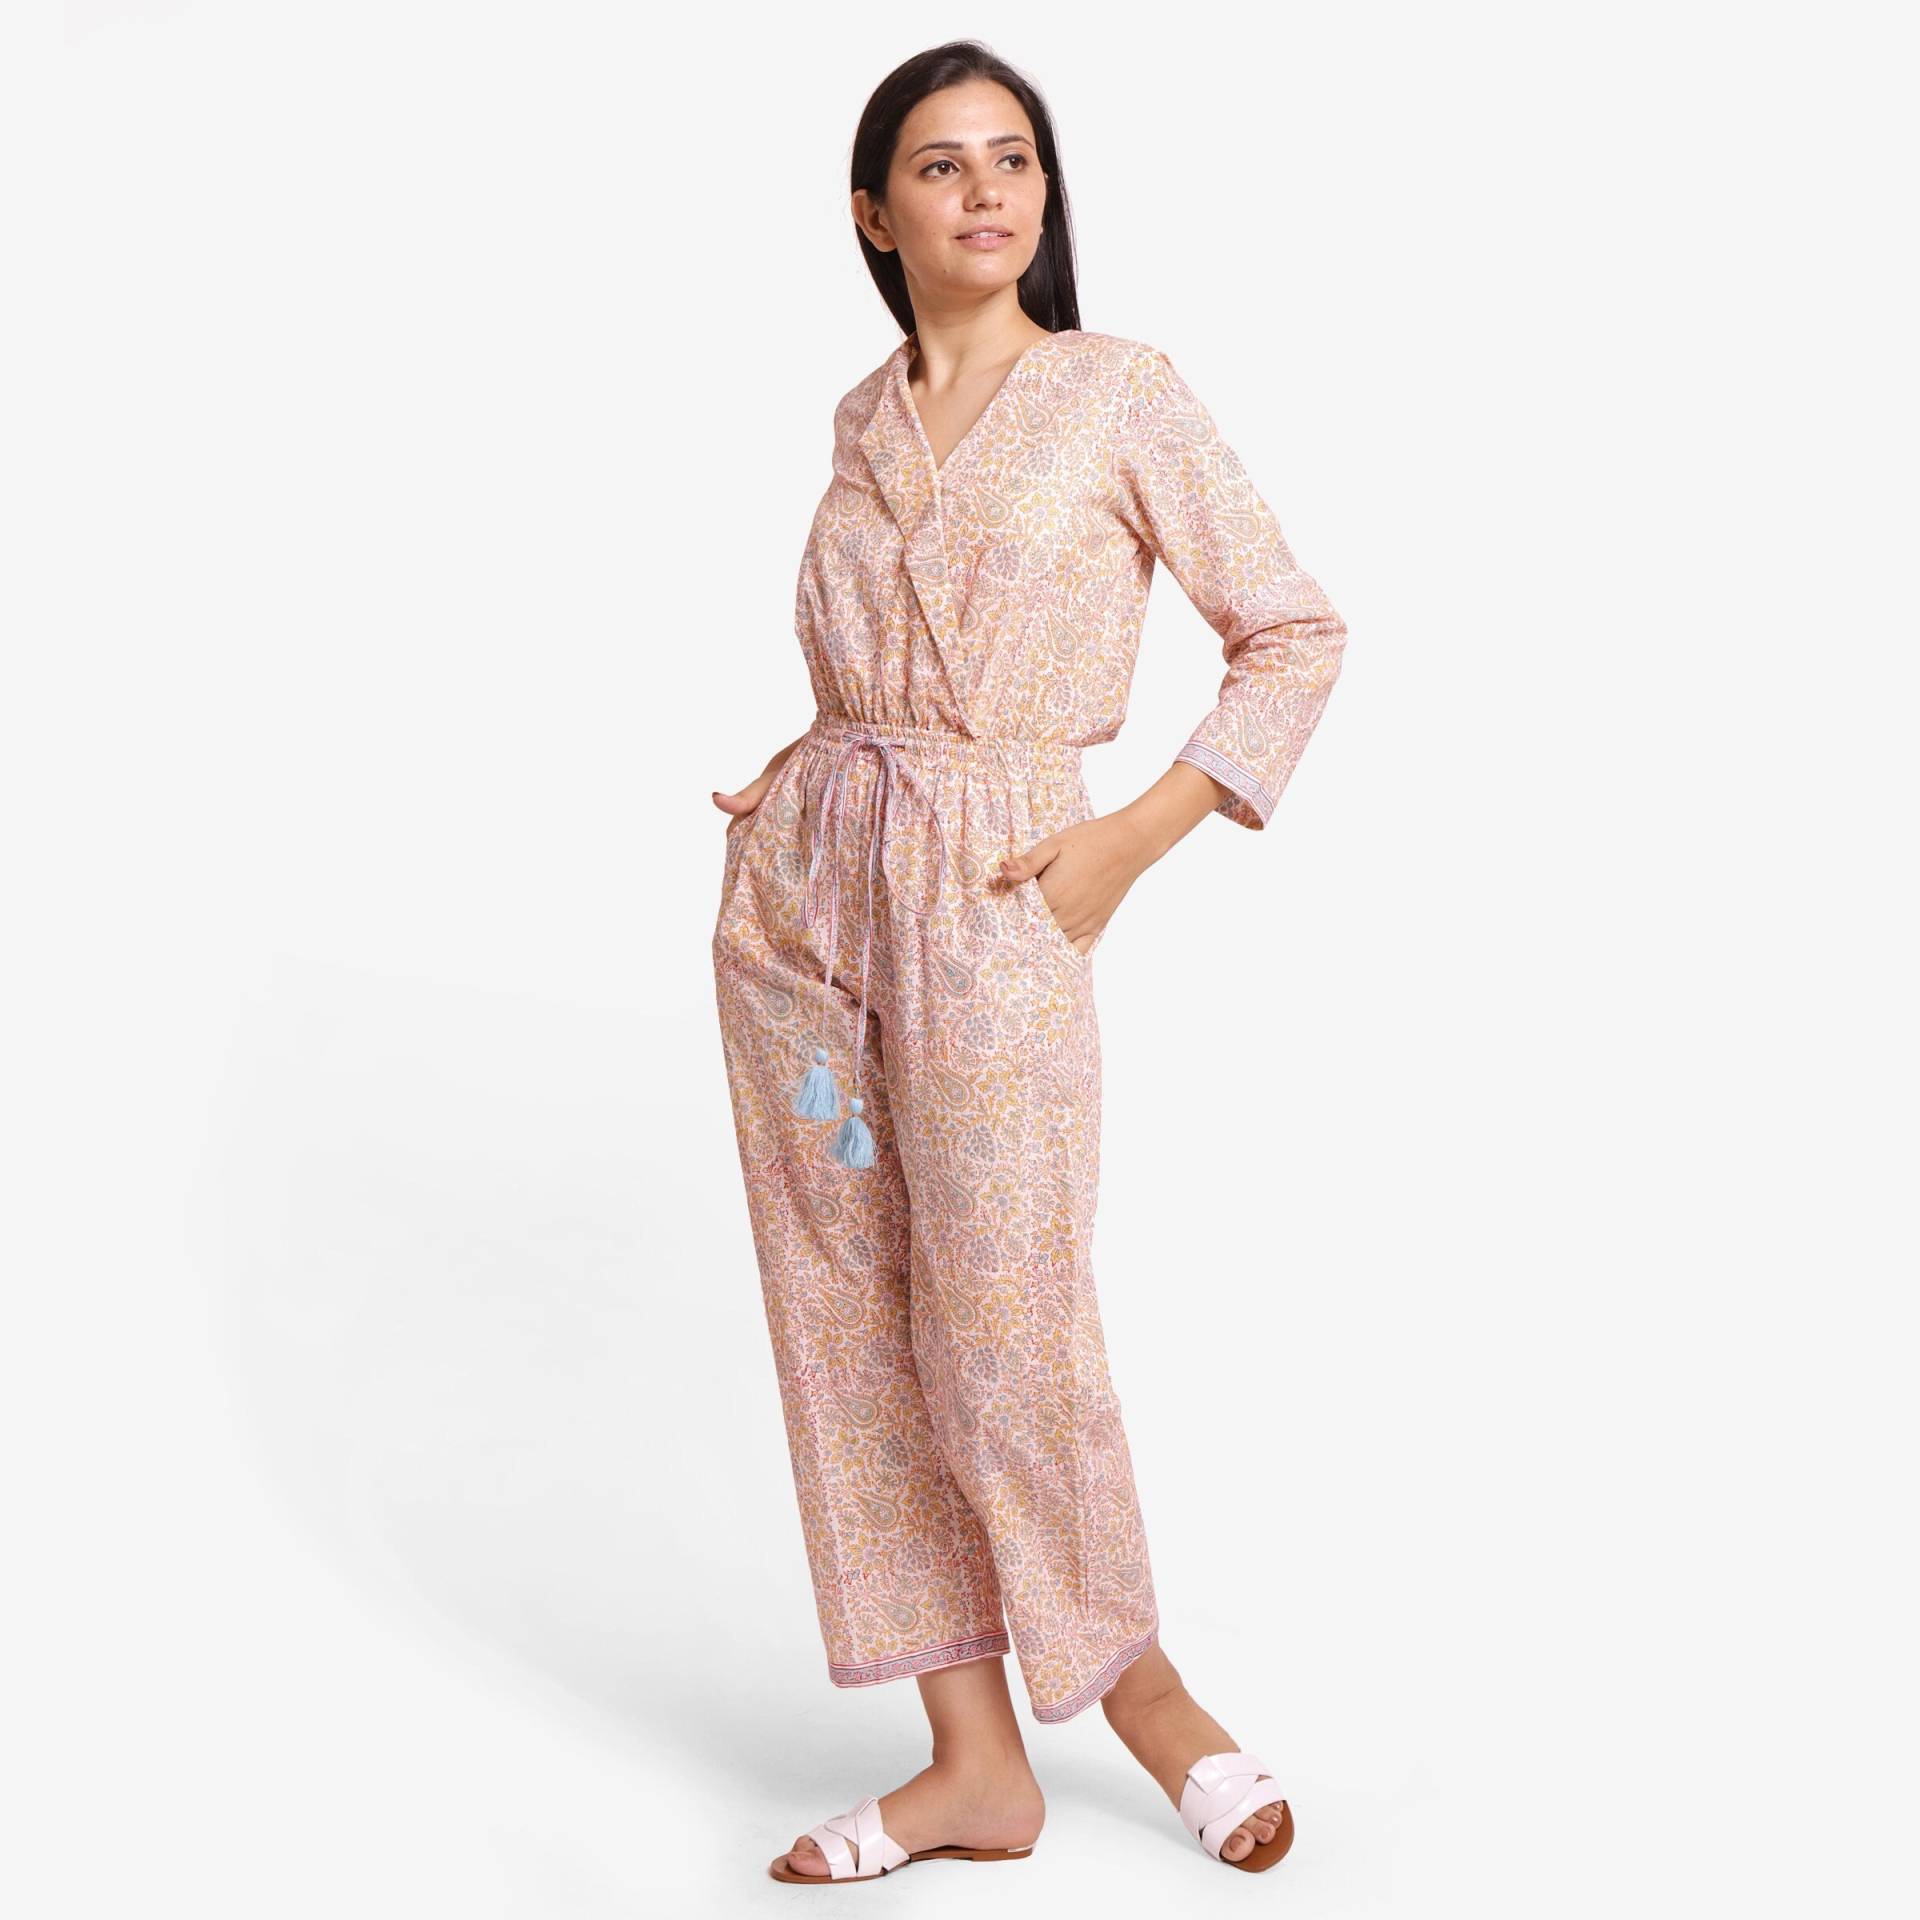 Pastell Rosa 100% Baumwolle Block Print Jumpsuit, Anpassbare Mid-Rise V-Ausschnitt Jumpsuit Mit Taschen, Plus Size, Petite, Tall Etsw von SeamsFriendlyIndia